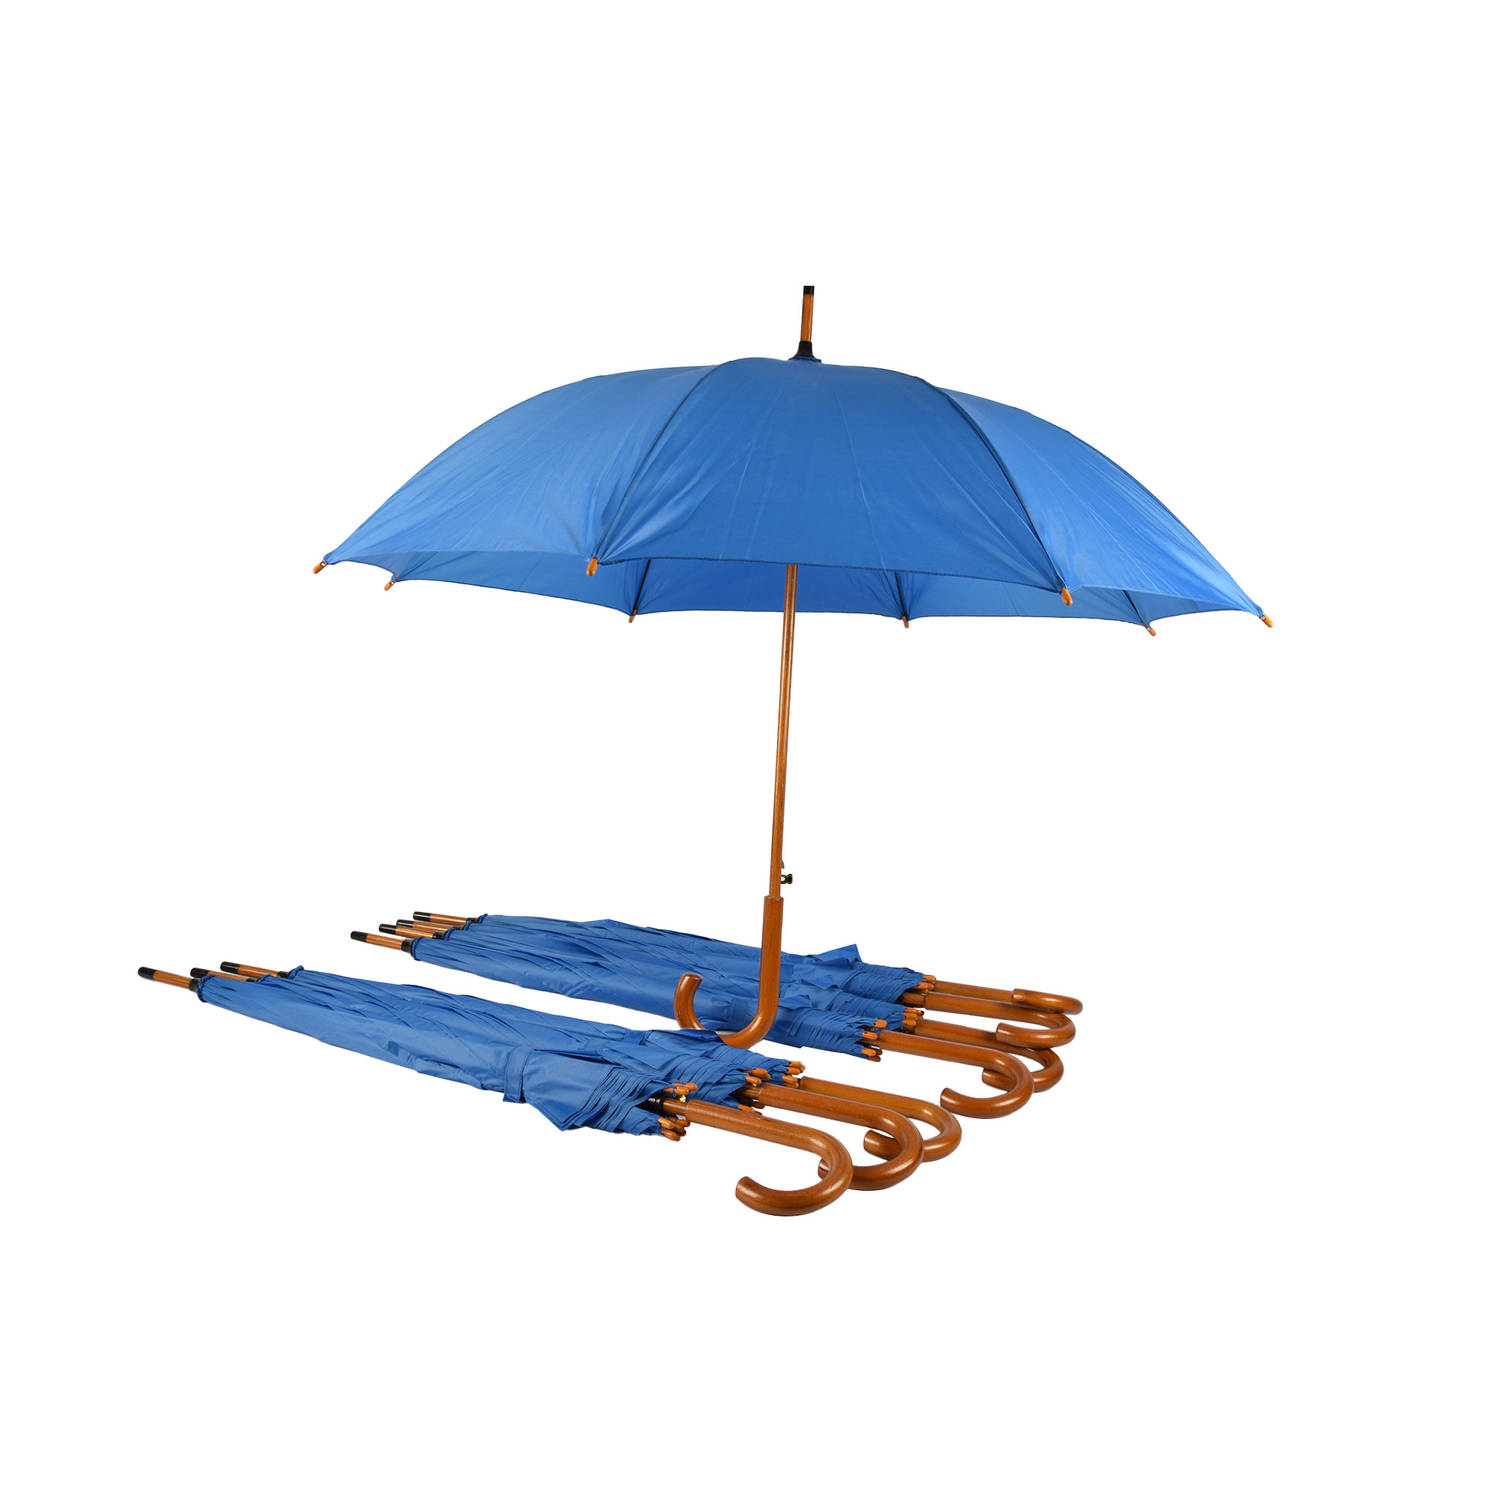 Set van 8 Automatische en Windproof Paraplu's voor Volwassenen | 102cm Diameter met Houten Handvat | Sky Blauw